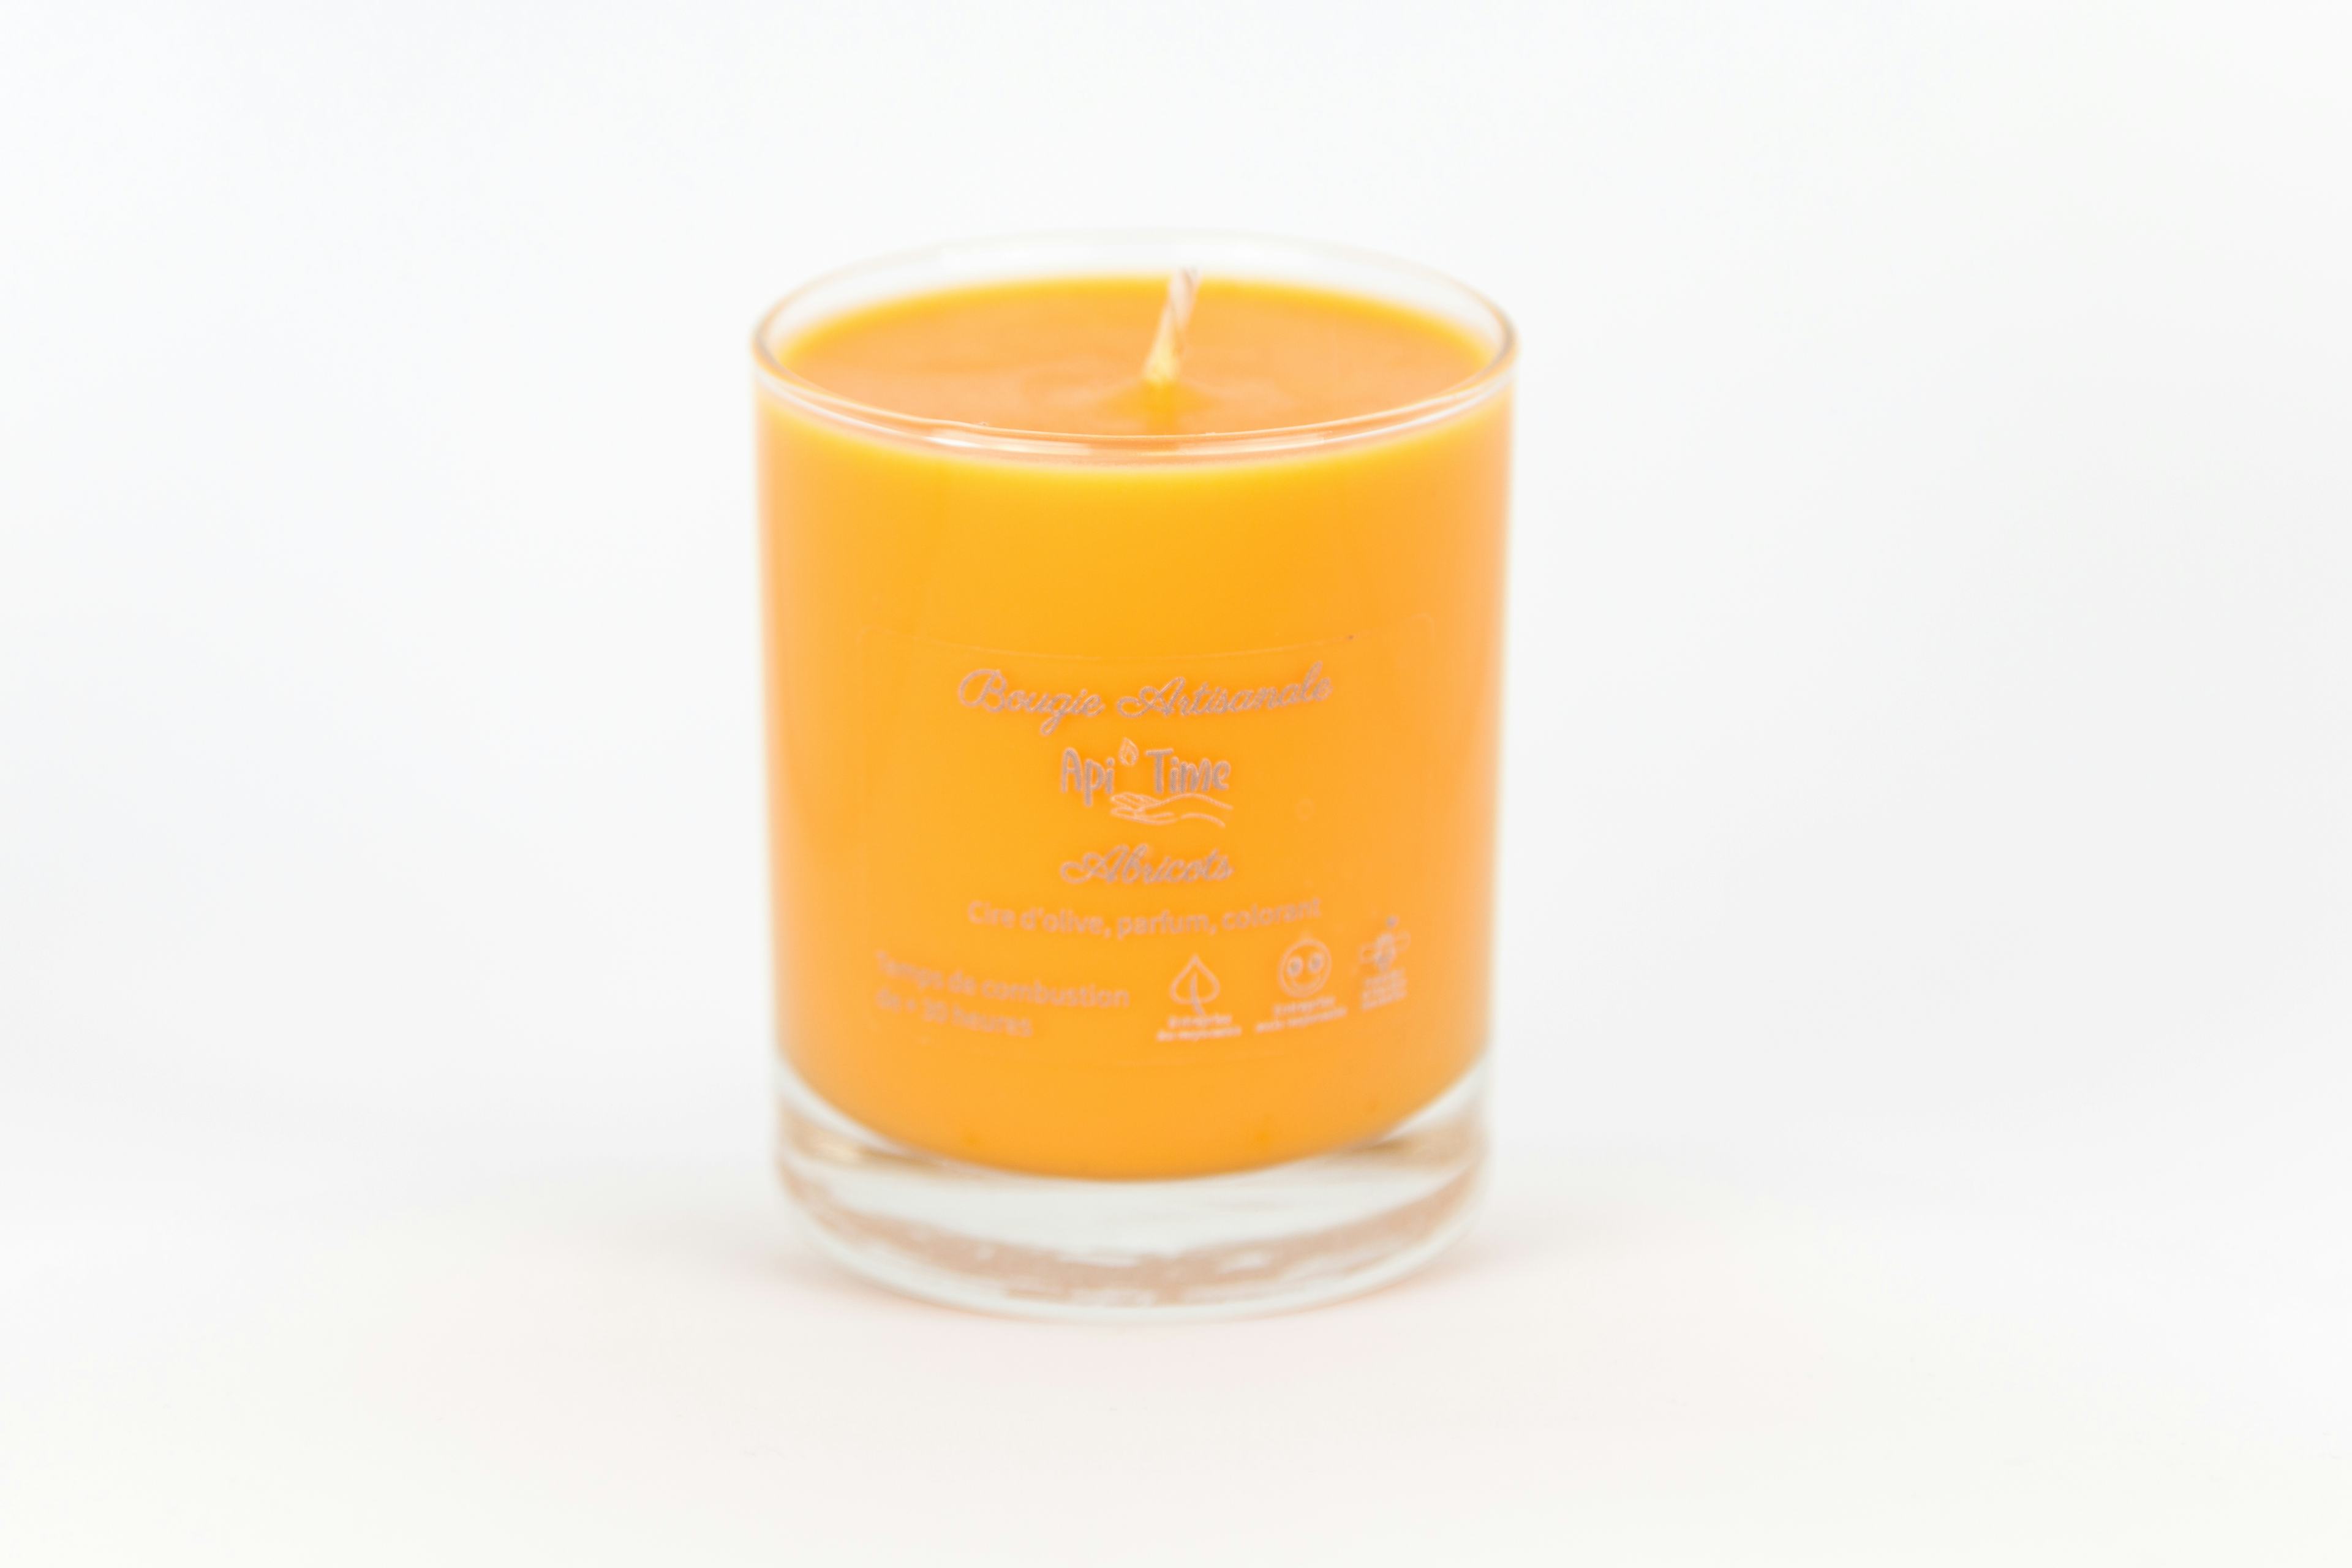 Bougies verre, parfum Abricot, Le Goût du Miel, Courtepin, image 1 | Mimelis